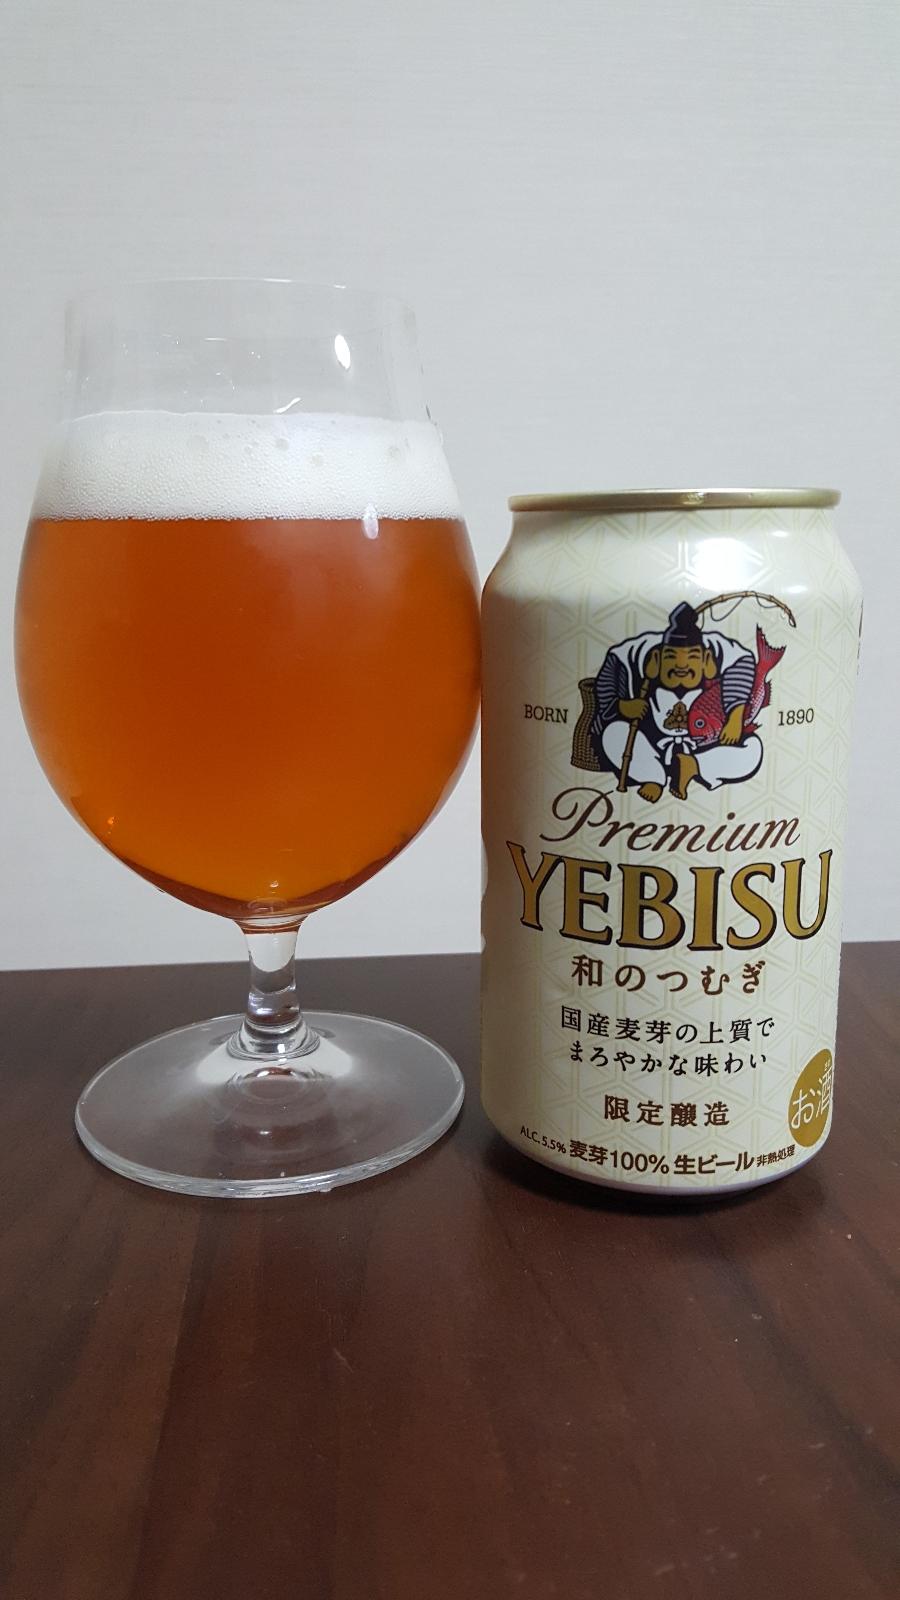 Yebisu Wa no Tsumugi